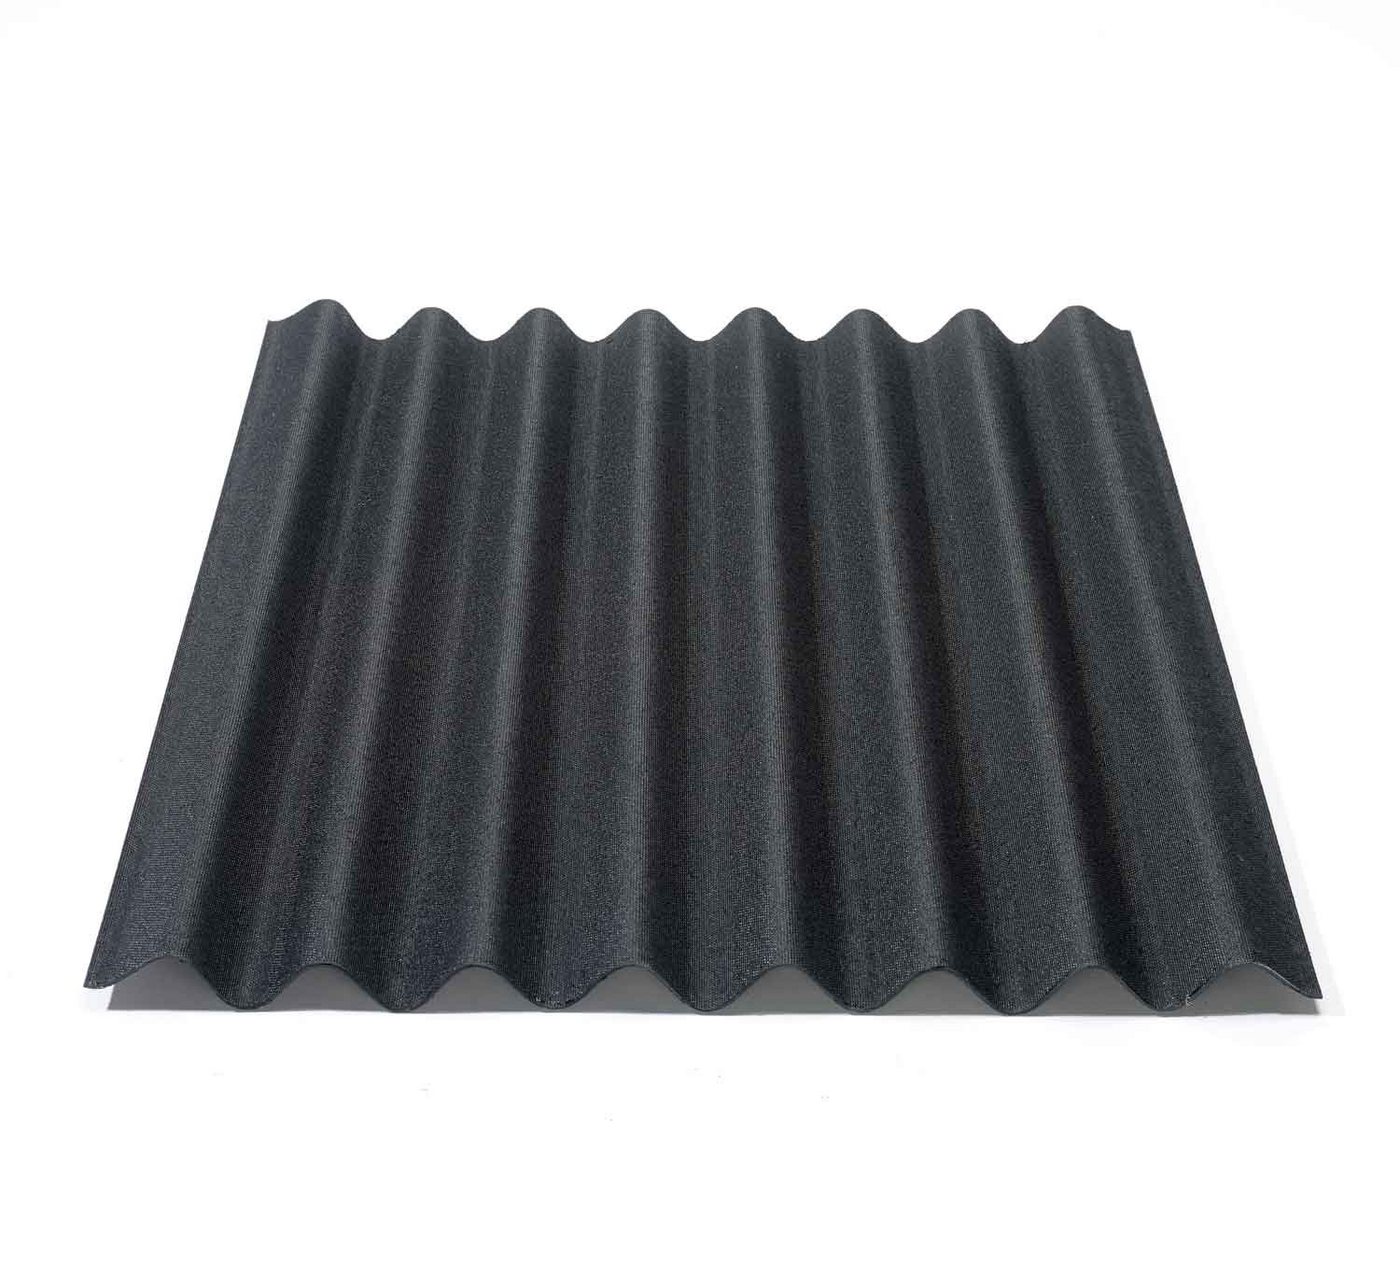 Onduline Dachpappe Onduline Easyline Dachplatte Wandplatte Bitumenwellplatten Wellplatte 1x0,76m - schwarz, wellig, 0.76 m² pro Paket, (1-St) von Onduline